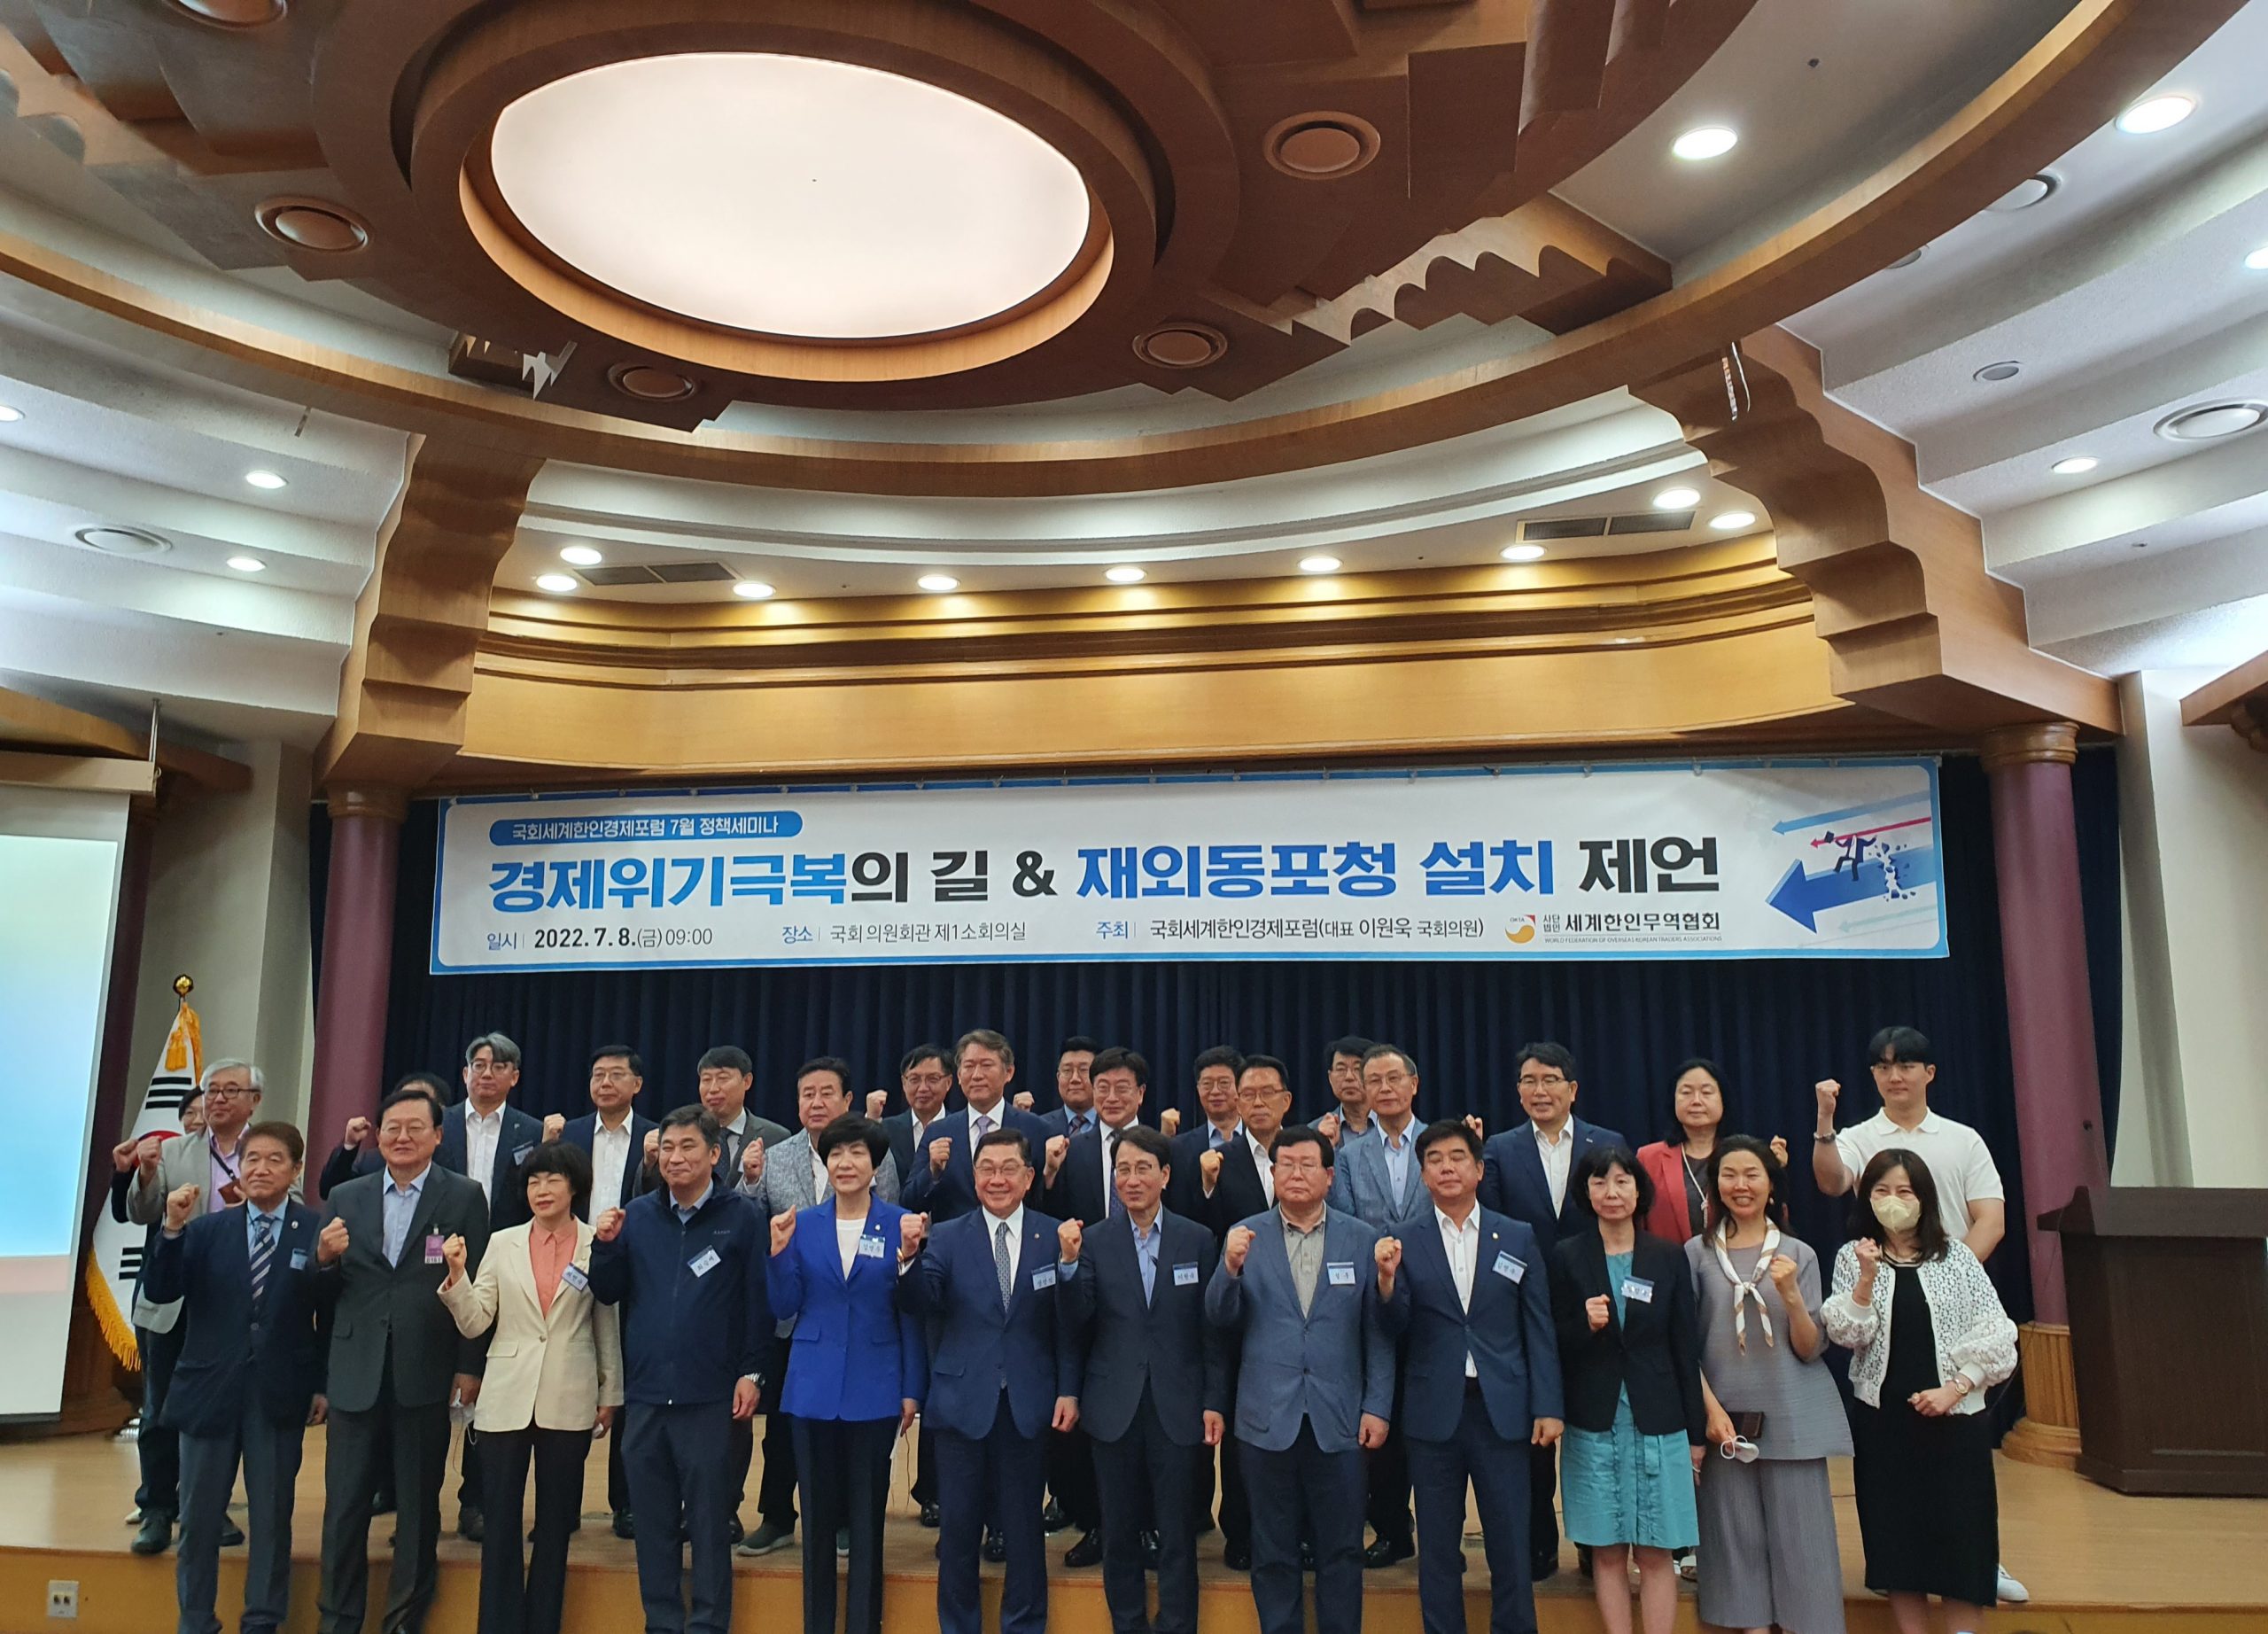 월드옥타, 국회세계한인경제포럼과 ‘정책세미나’ 공동 개최